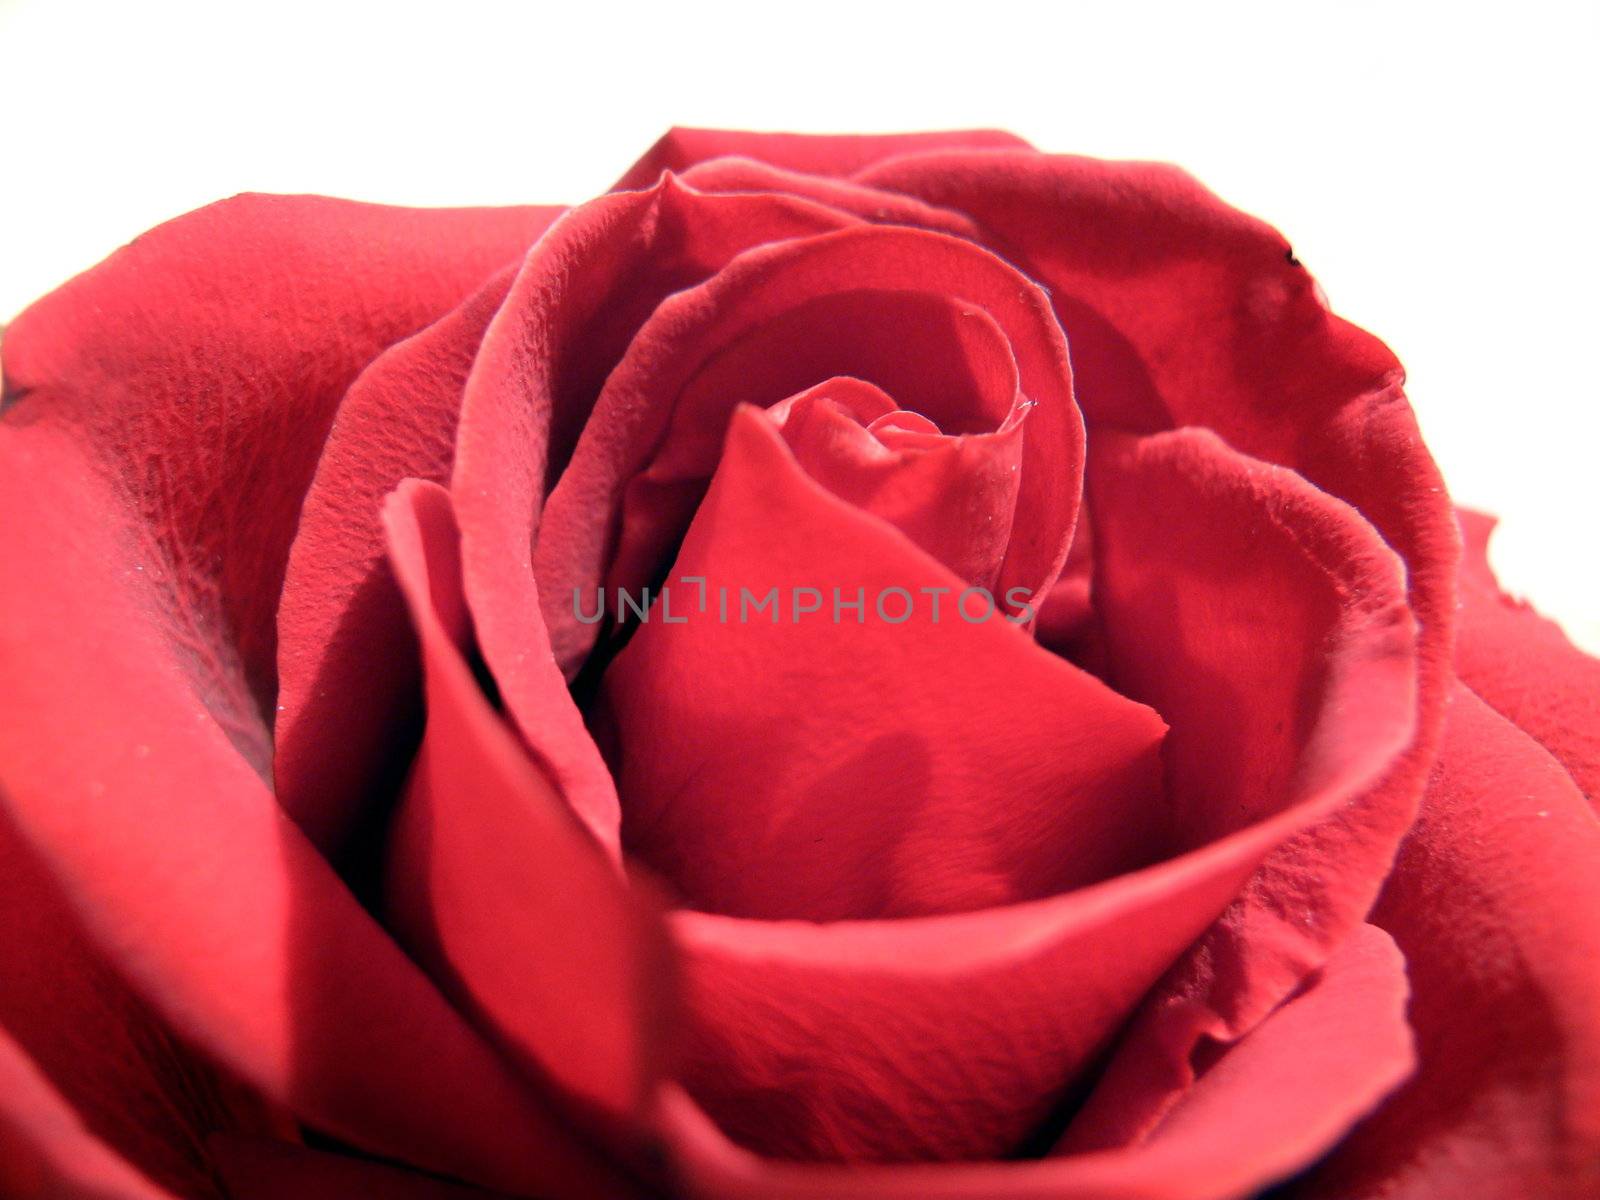 Red rose by Stoyanov